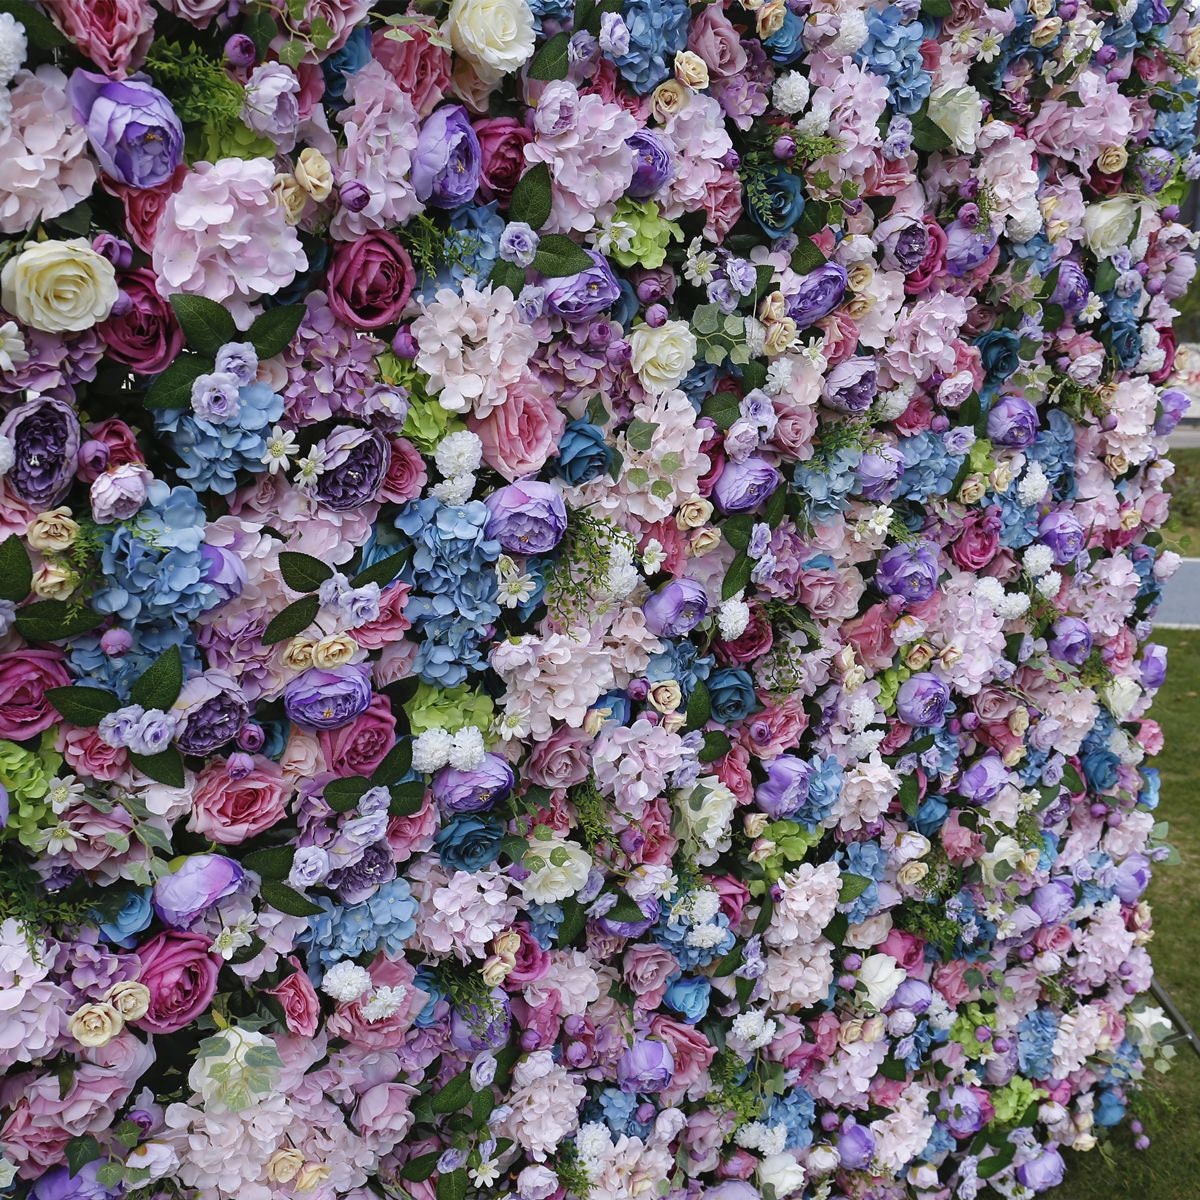 New Arrival Flower Wall Wedding Photography Backdrop Special Event Party Boutique Shop Arrangement Decor Floral Panels 40x60cm